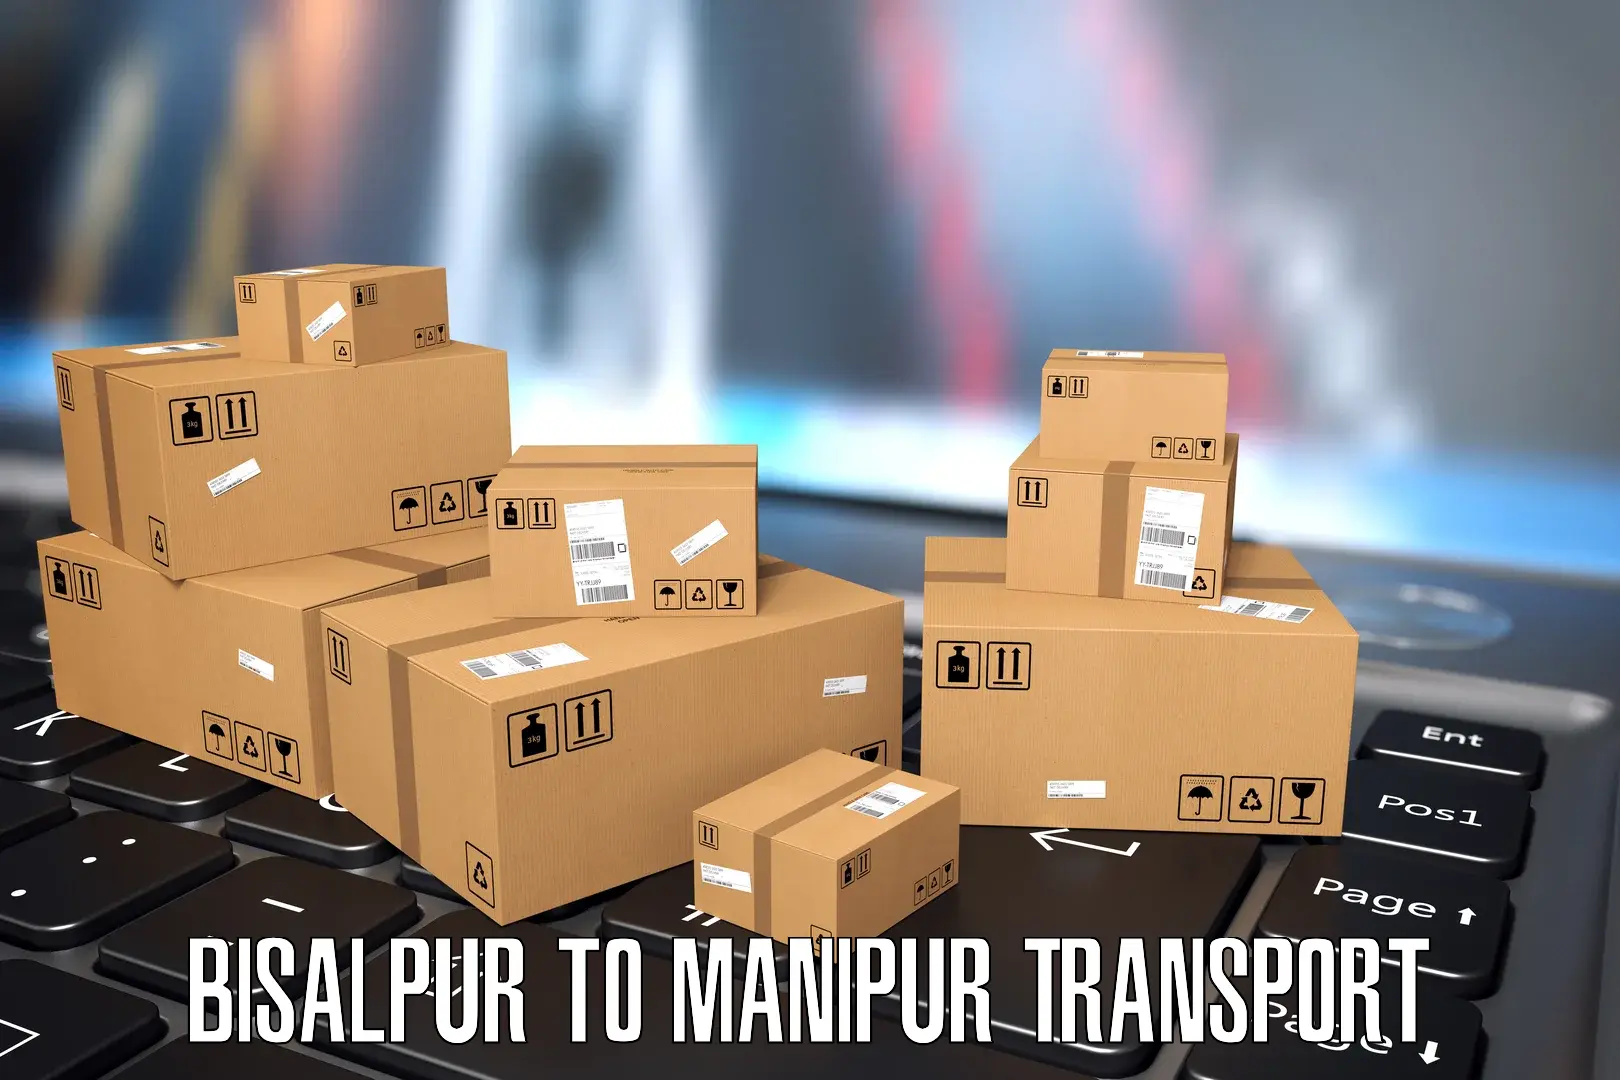 Interstate transport services Bisalpur to NIT Manipur